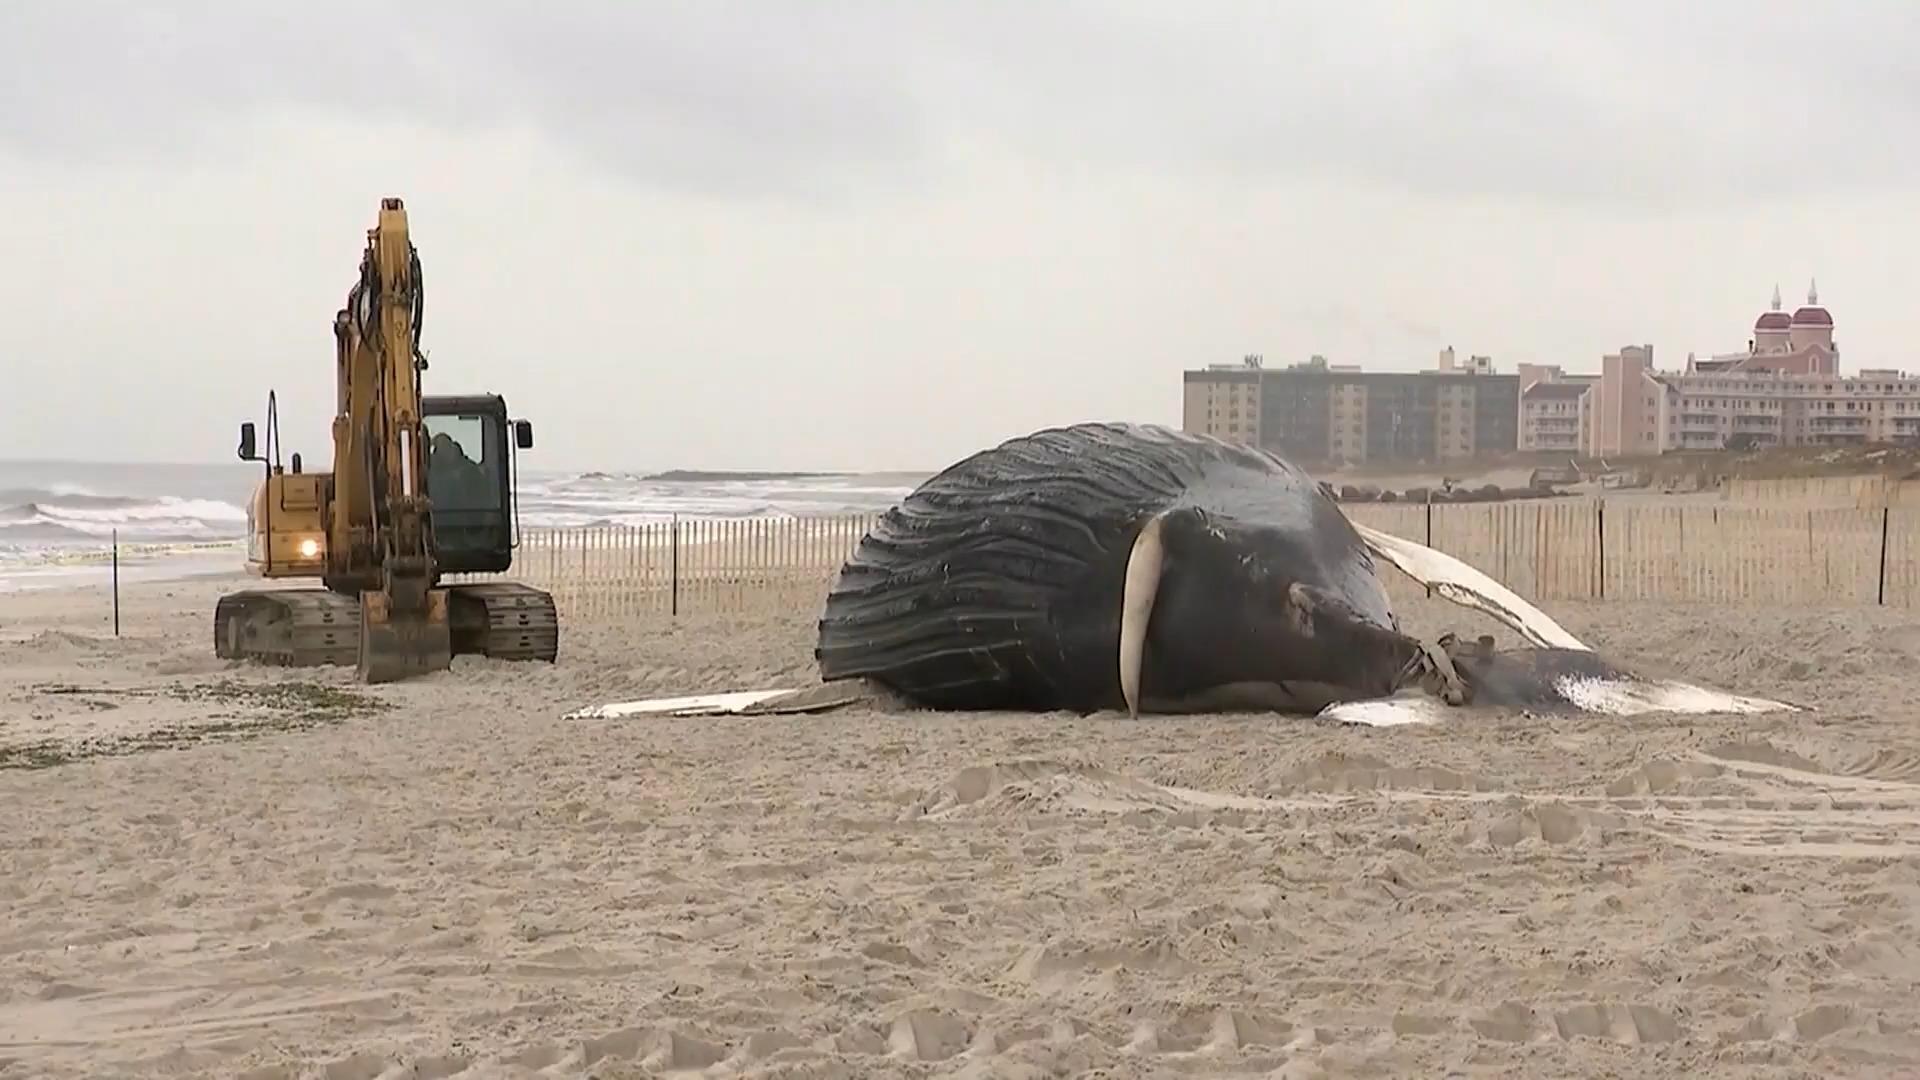 Riesiger Buckelwal an Küste von Long Island angespült Bereits zum achten Mal in zwei Monaten